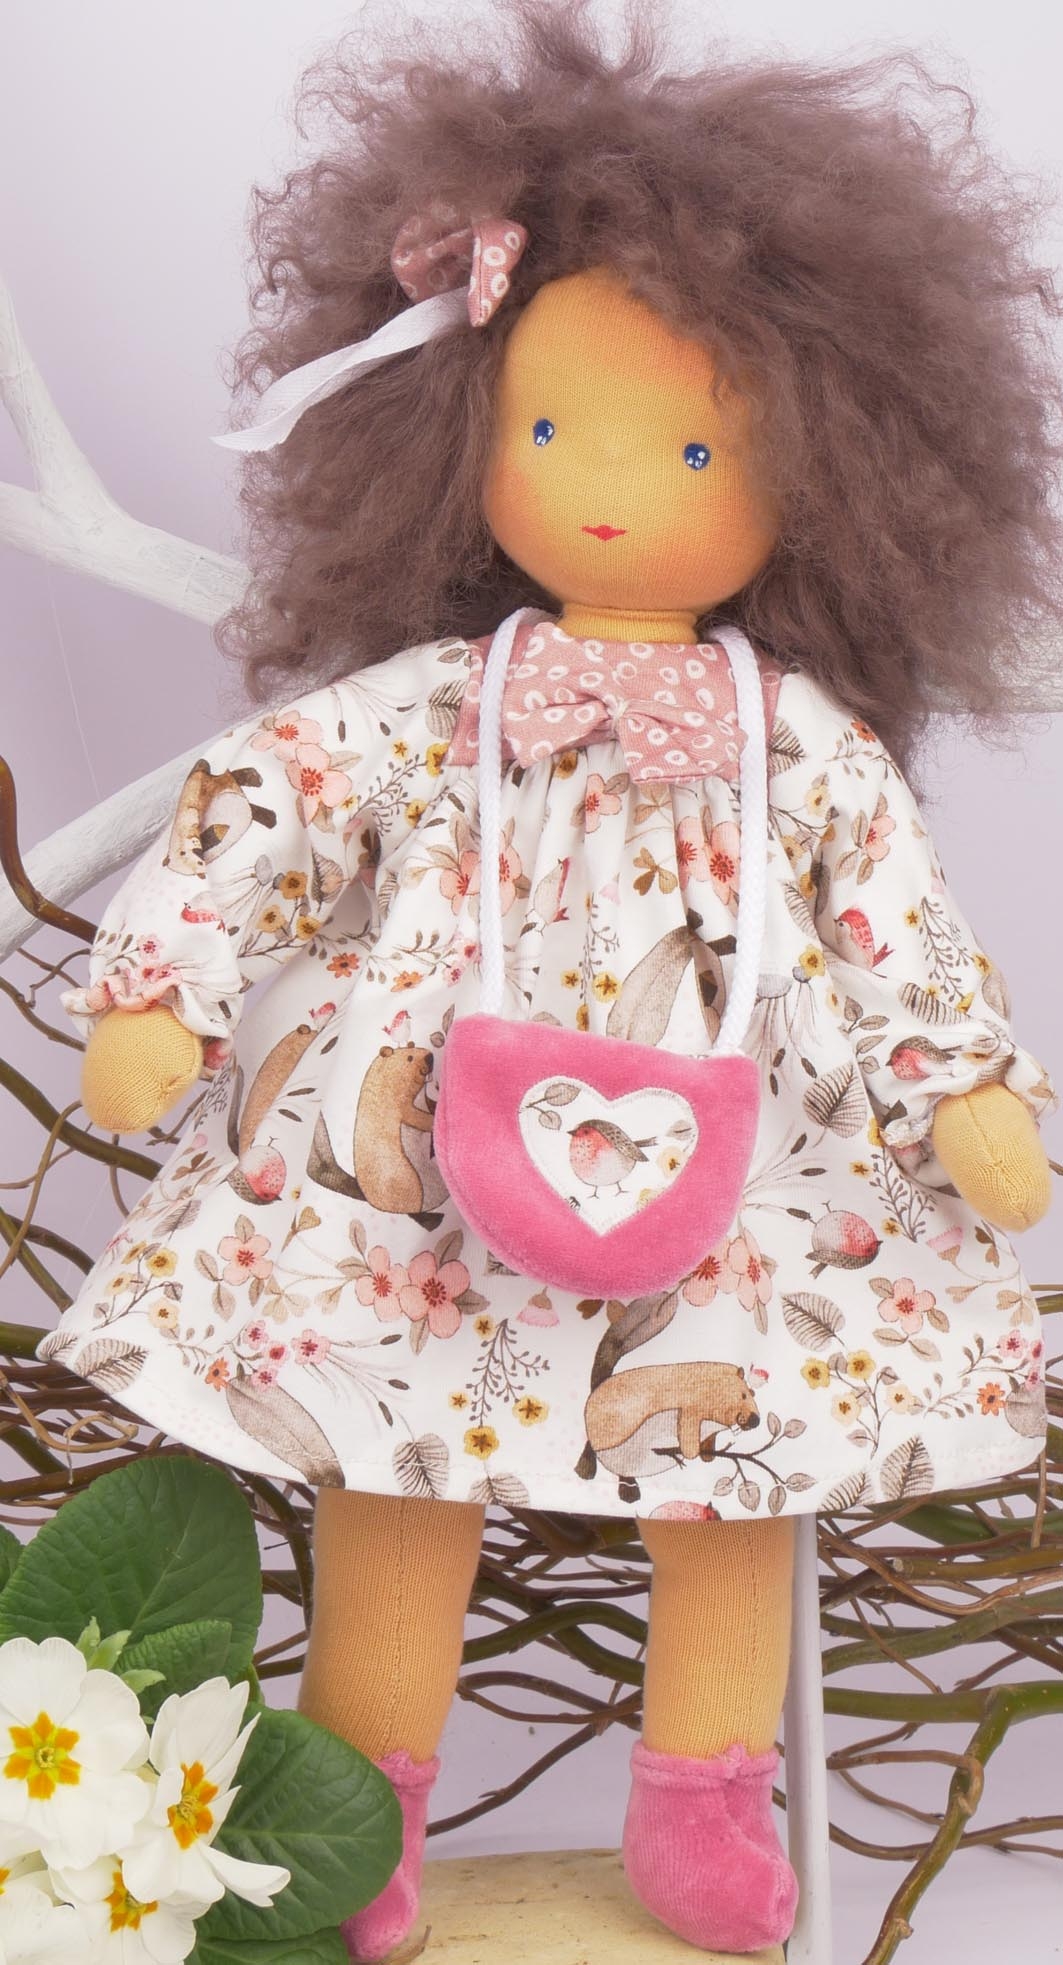 "Elfie" Puppe mit geraden Armen und Beinen,  30cm, Nähset incl. Tibetfell für Haare, reine Schafwollfüllung KbA-braun